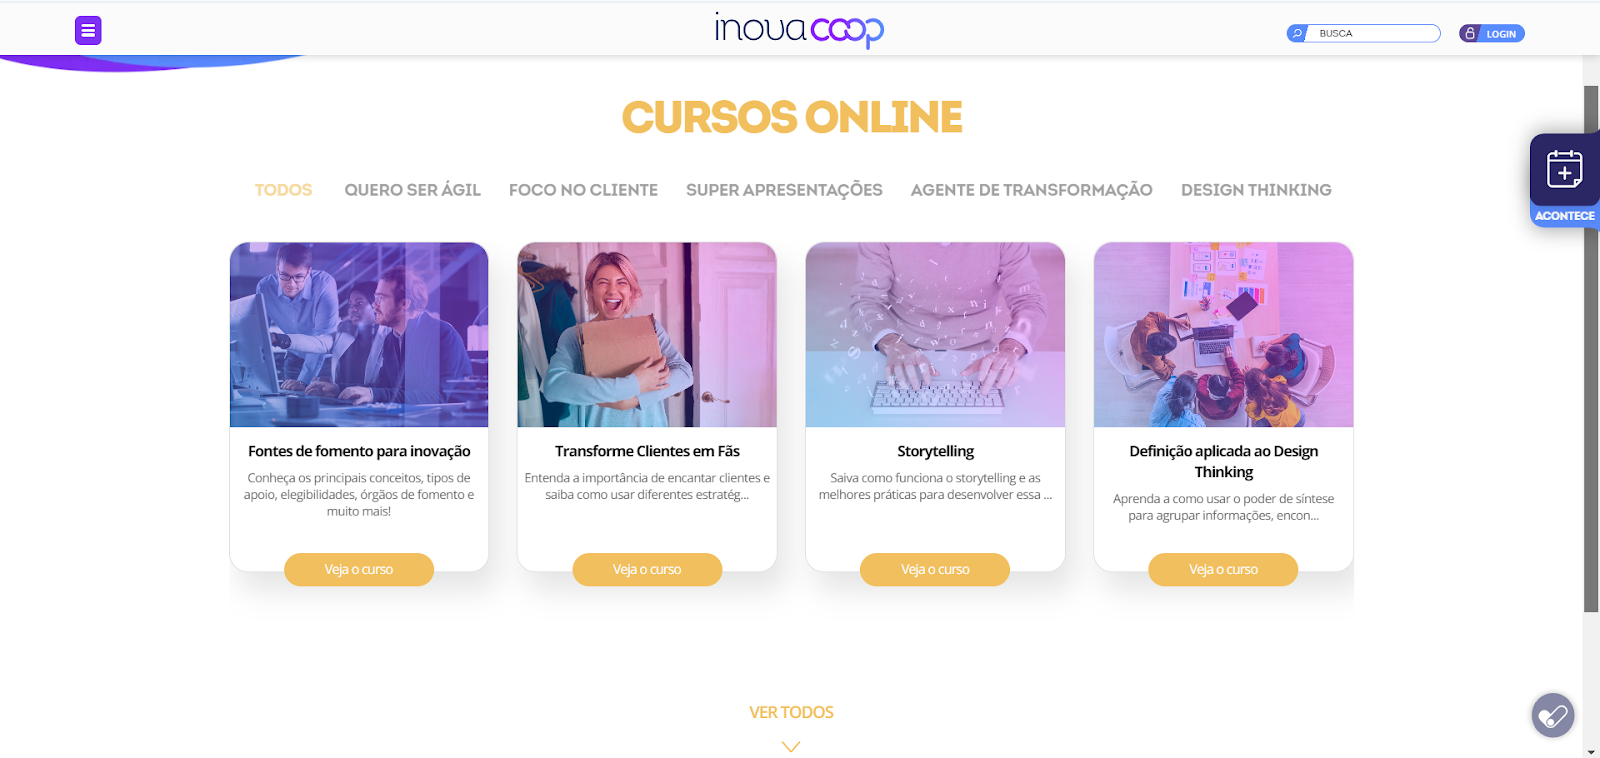 Confira os cursos online do portal InovaCoop